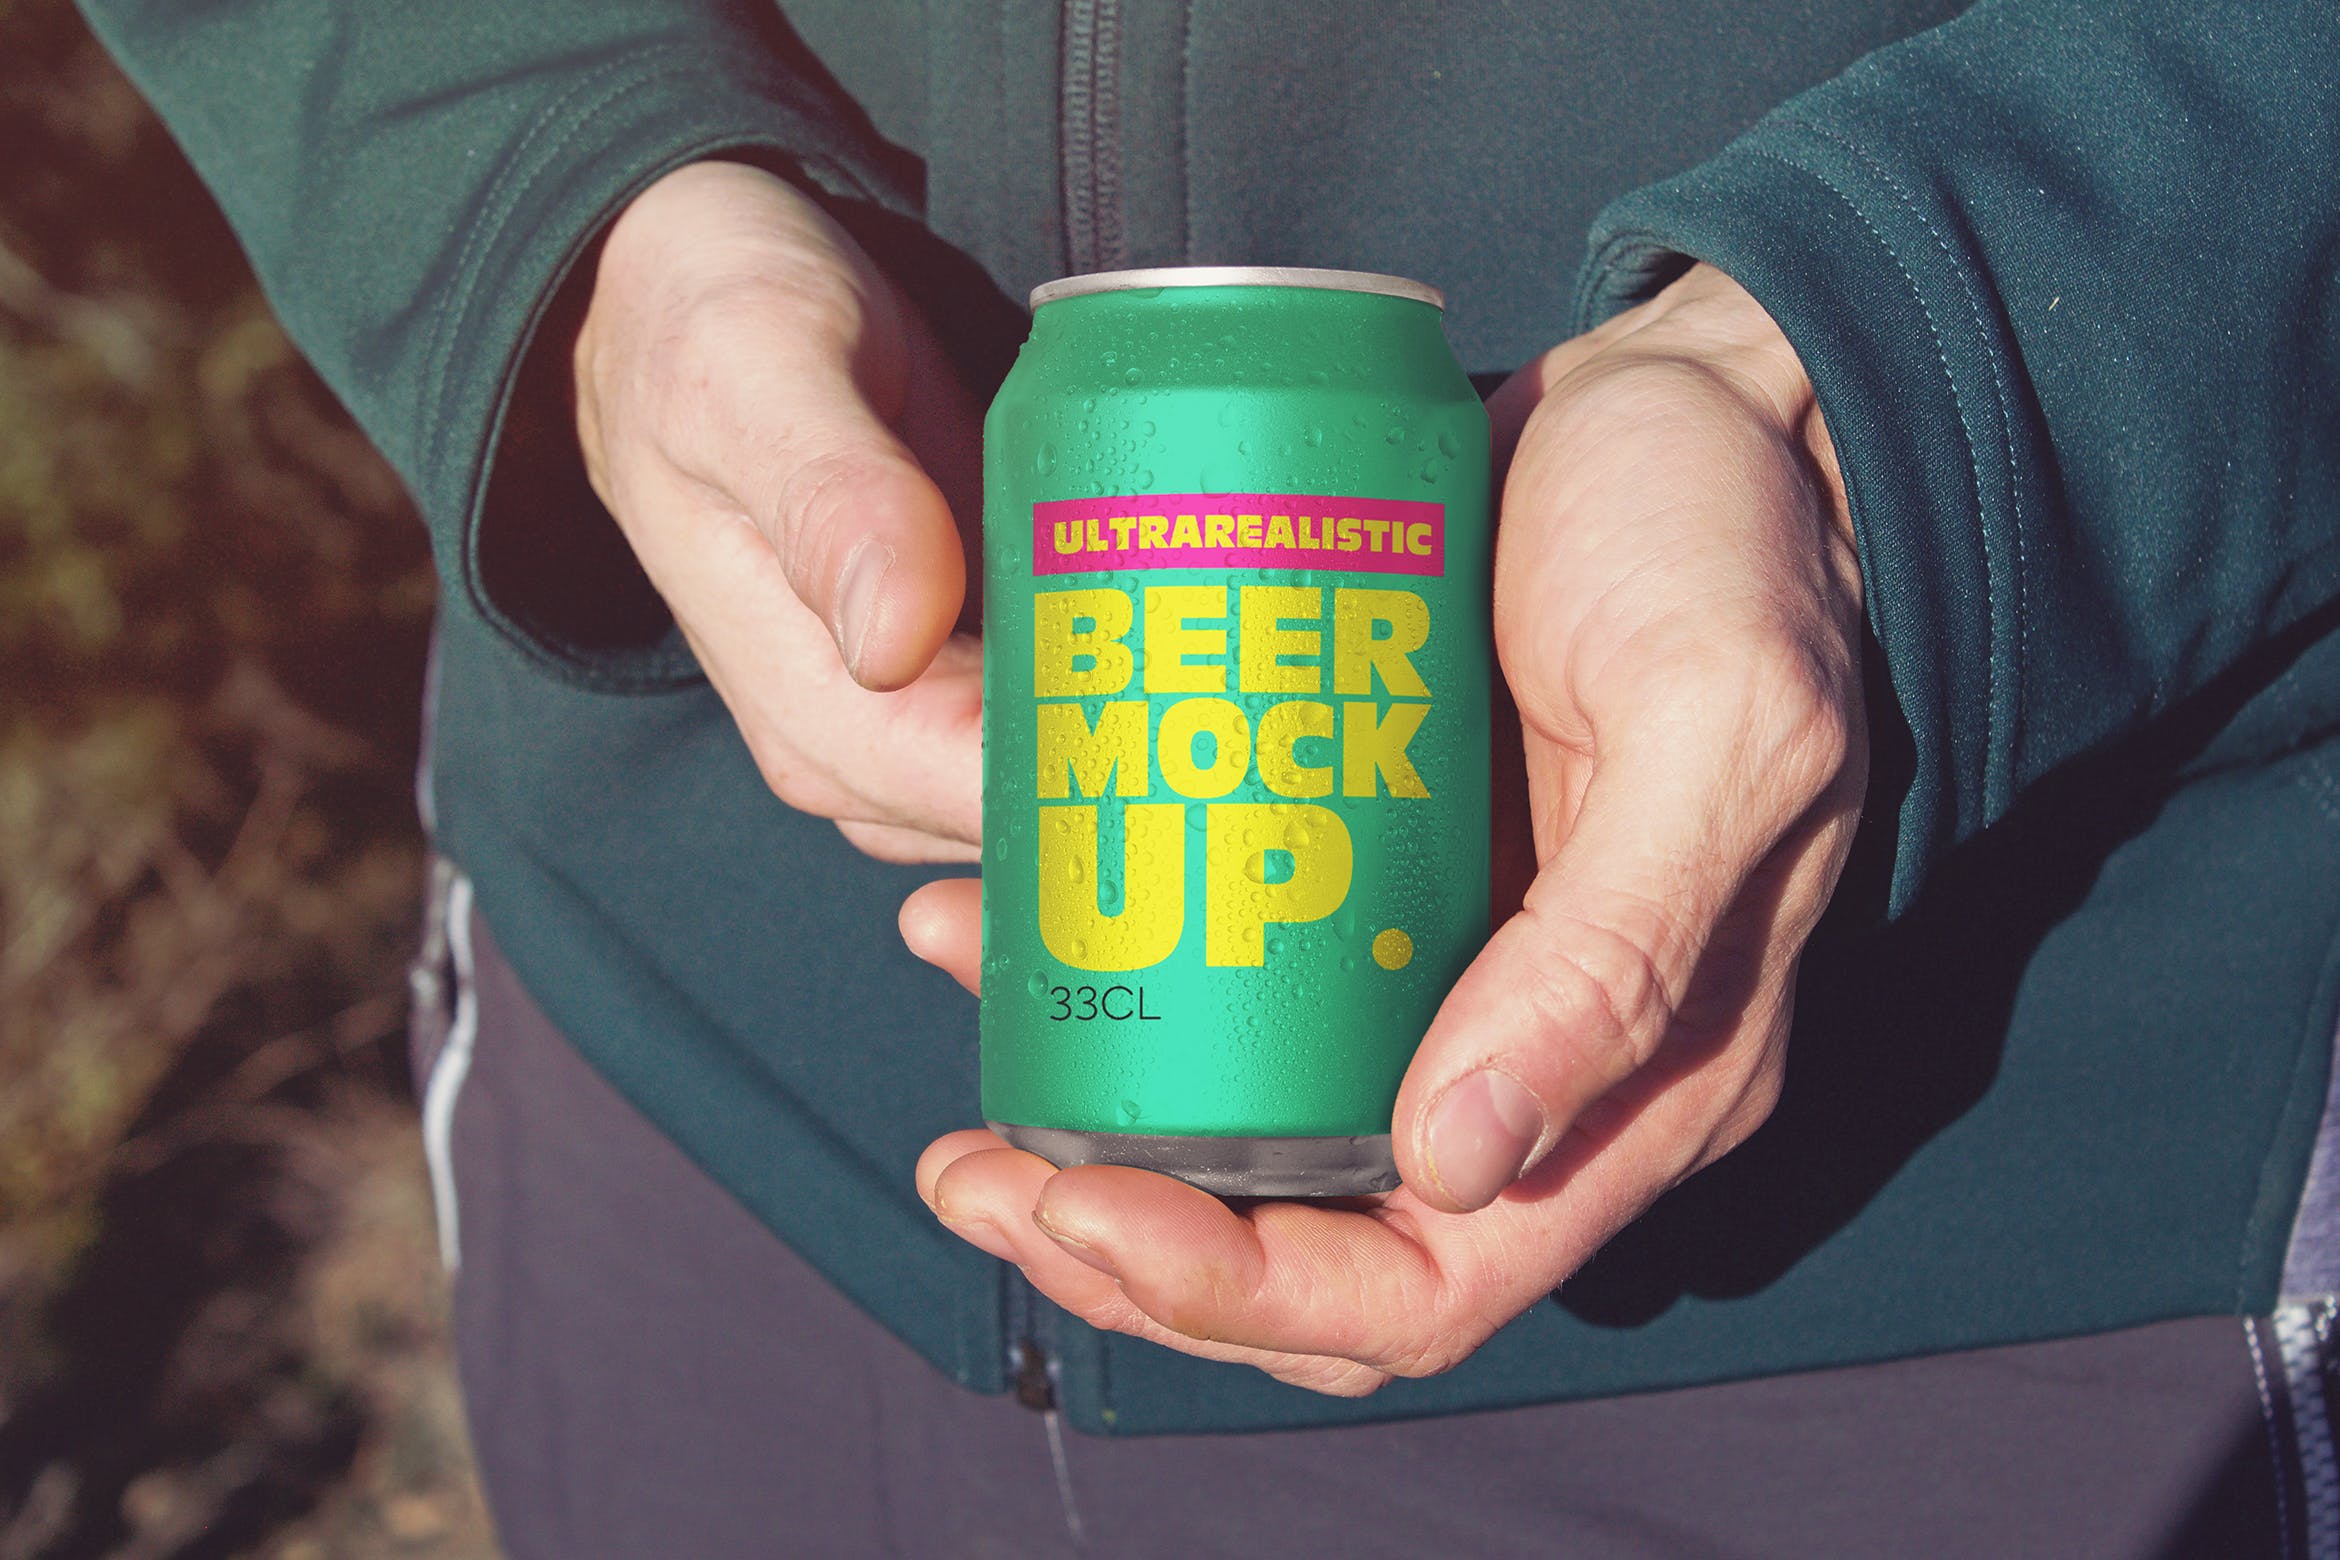 啤酒易拉罐包装外观设计图第一素材精选 Snuggled up Beer Can Mockup插图